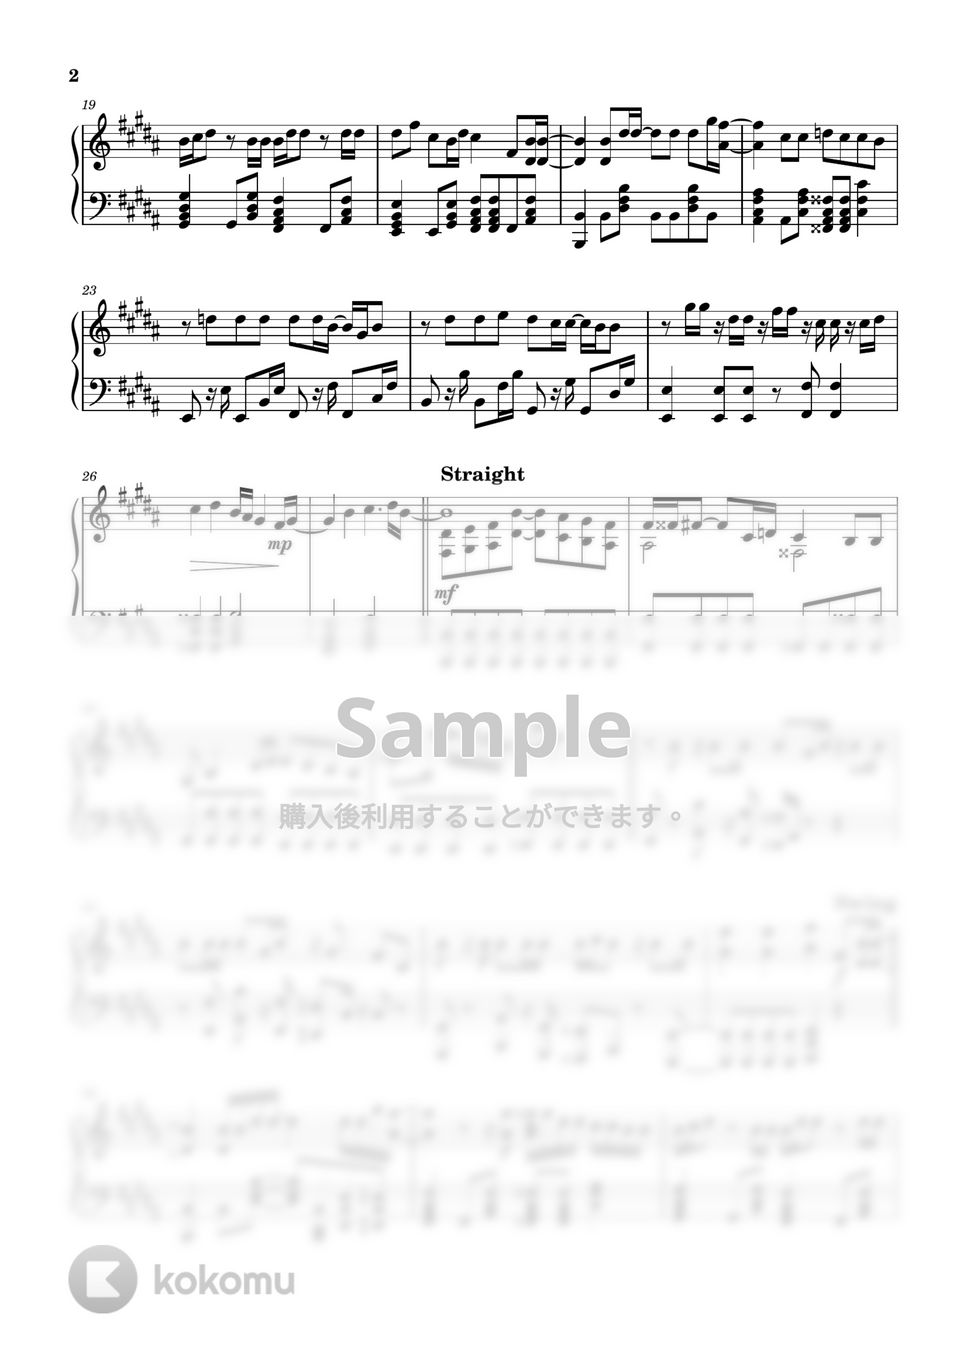 マカロニえんぴつ - リンジュー・ラヴ (ピアノ・ソロ/主題歌/100万回言えばよかった) by kanapiano